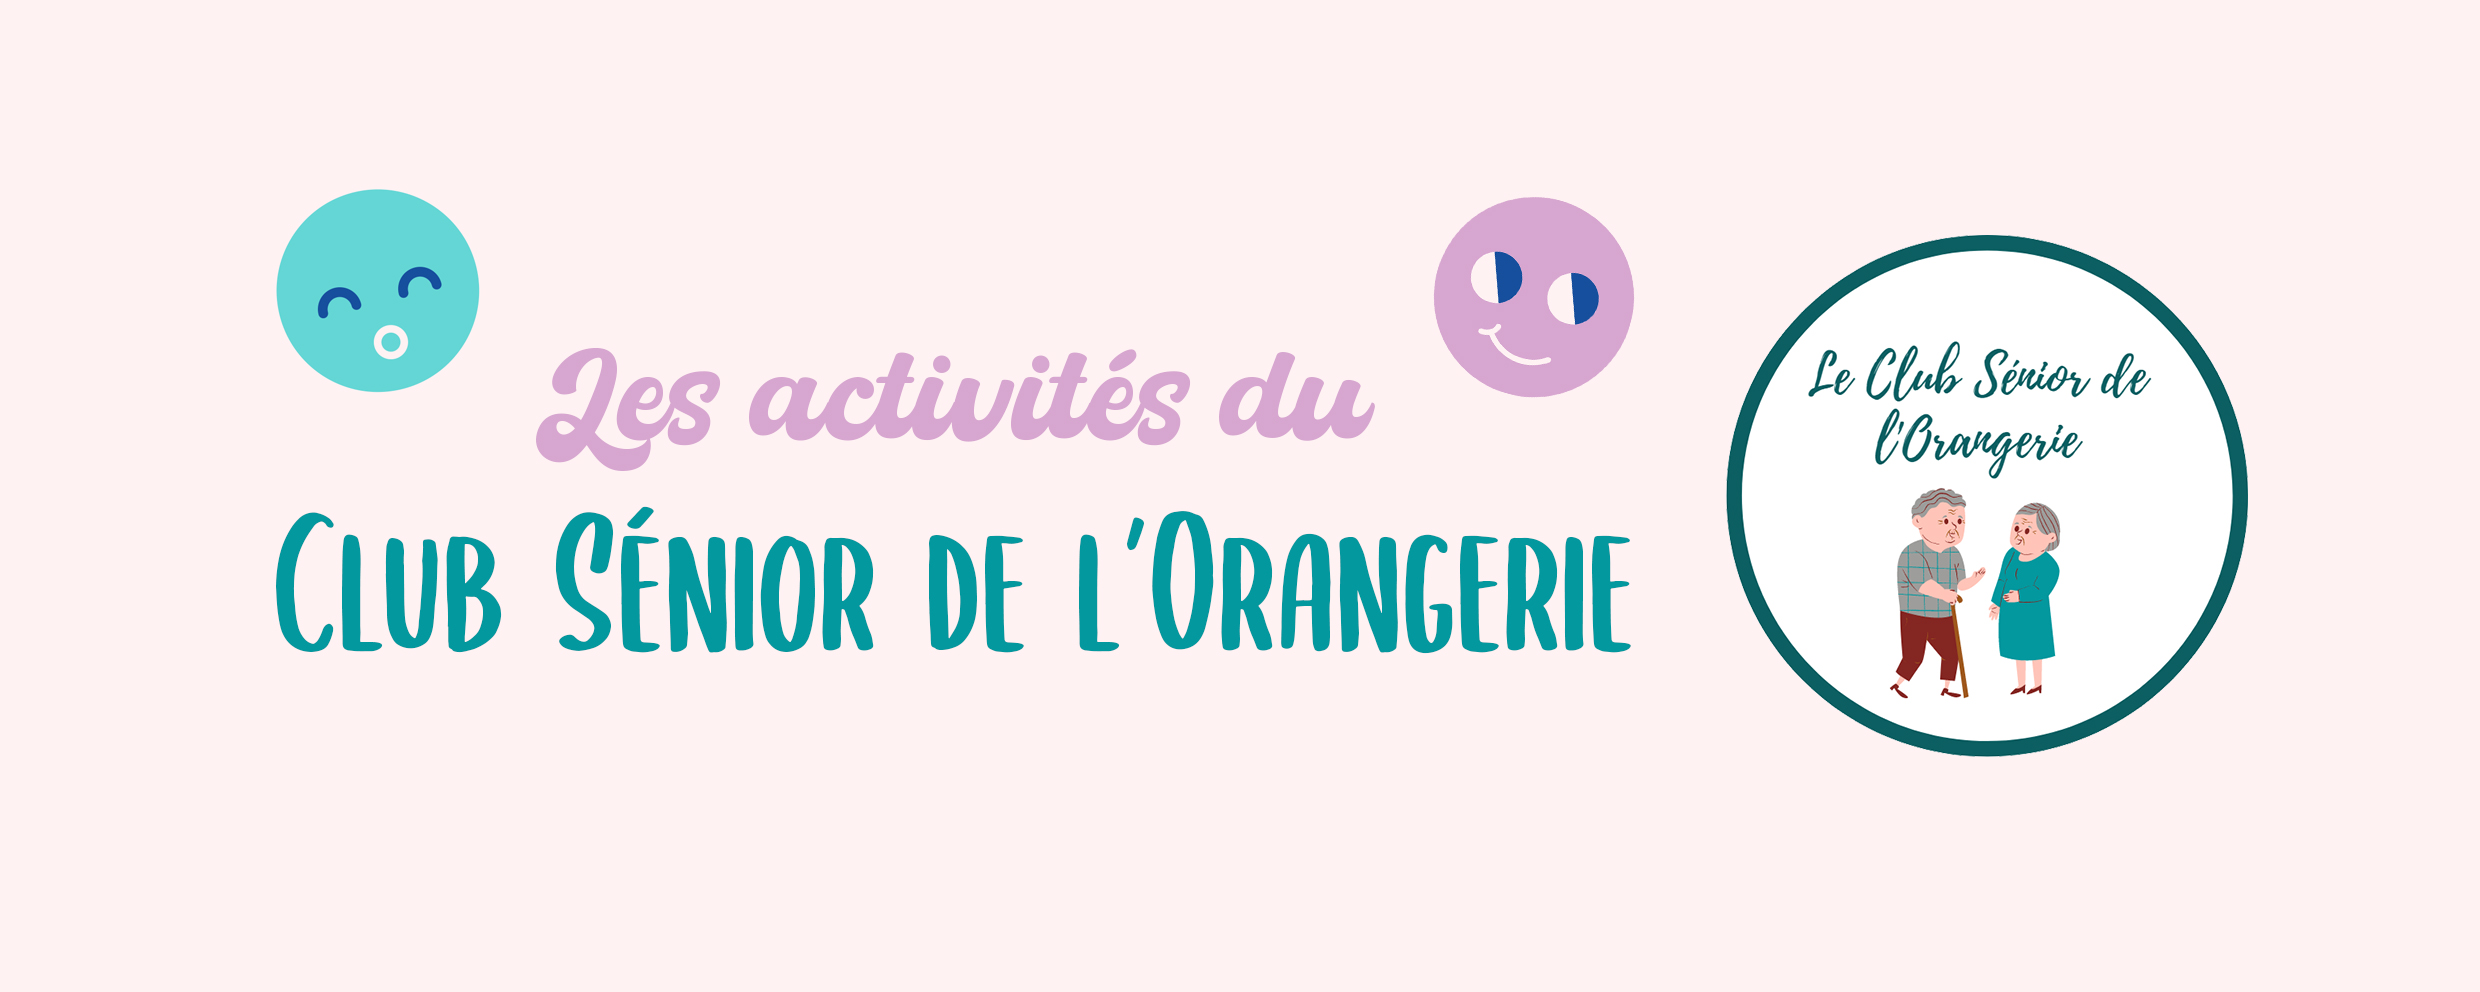 You are currently viewing Les activités du Club Sénior de l’Orangerie